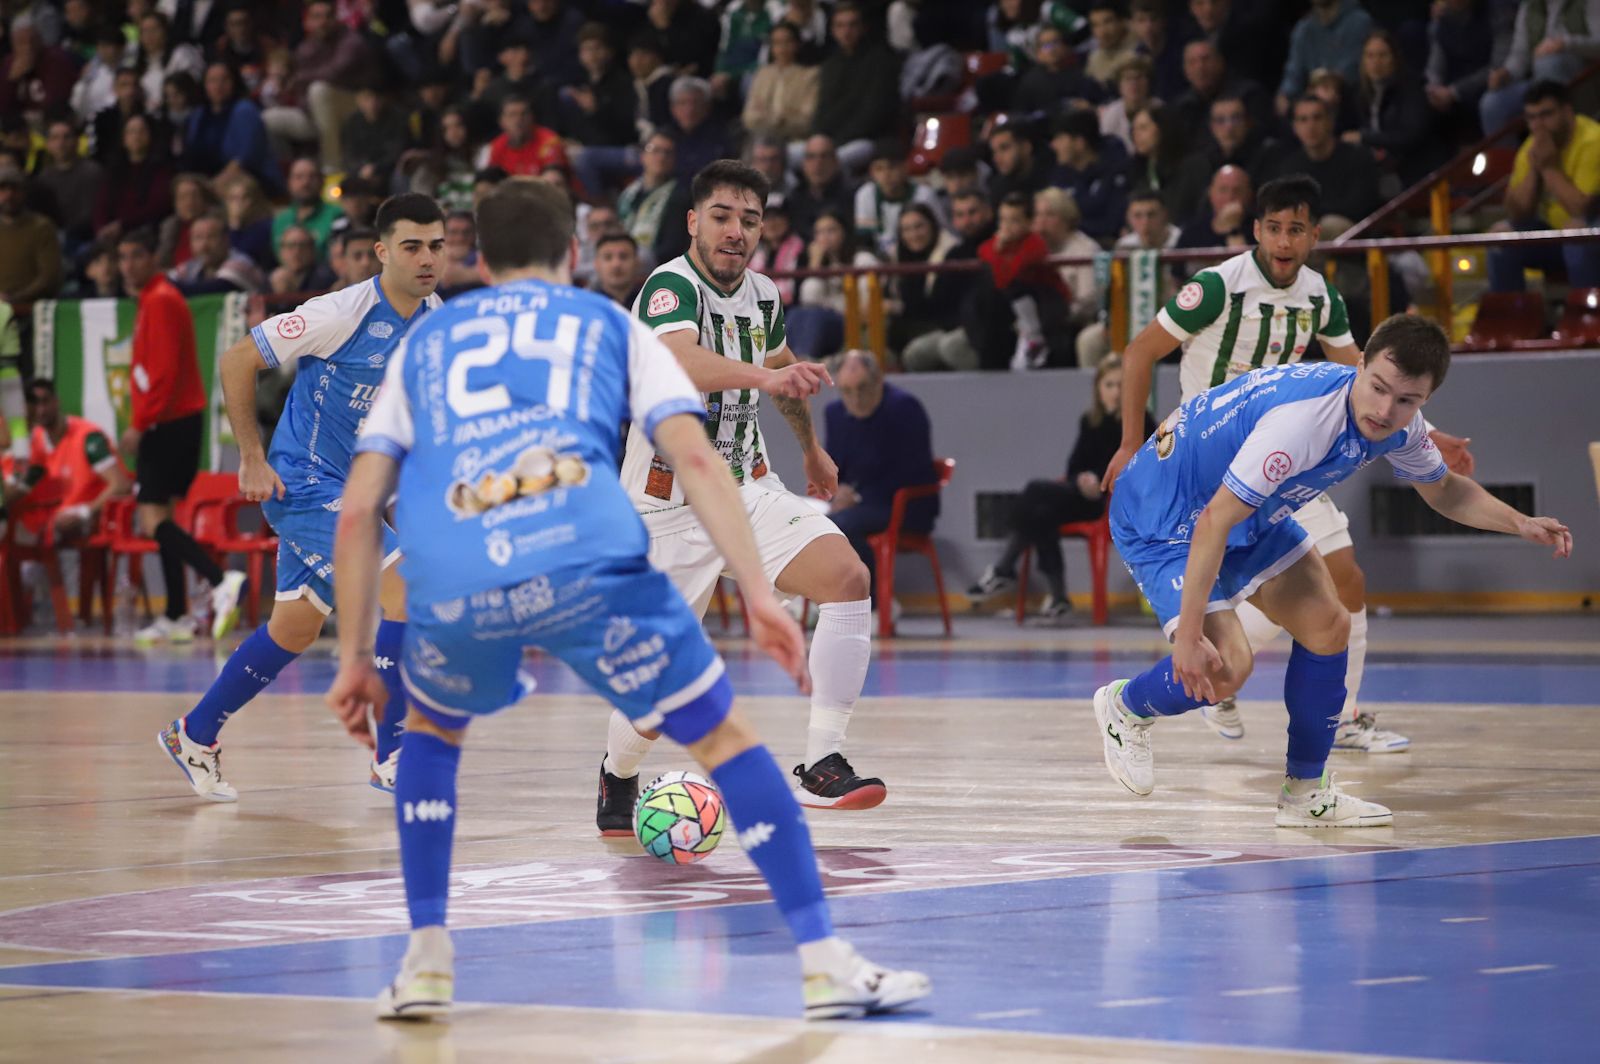 Córdoba Futsal-Noia: las imágenes del partido en el Palacio Vista Alegre